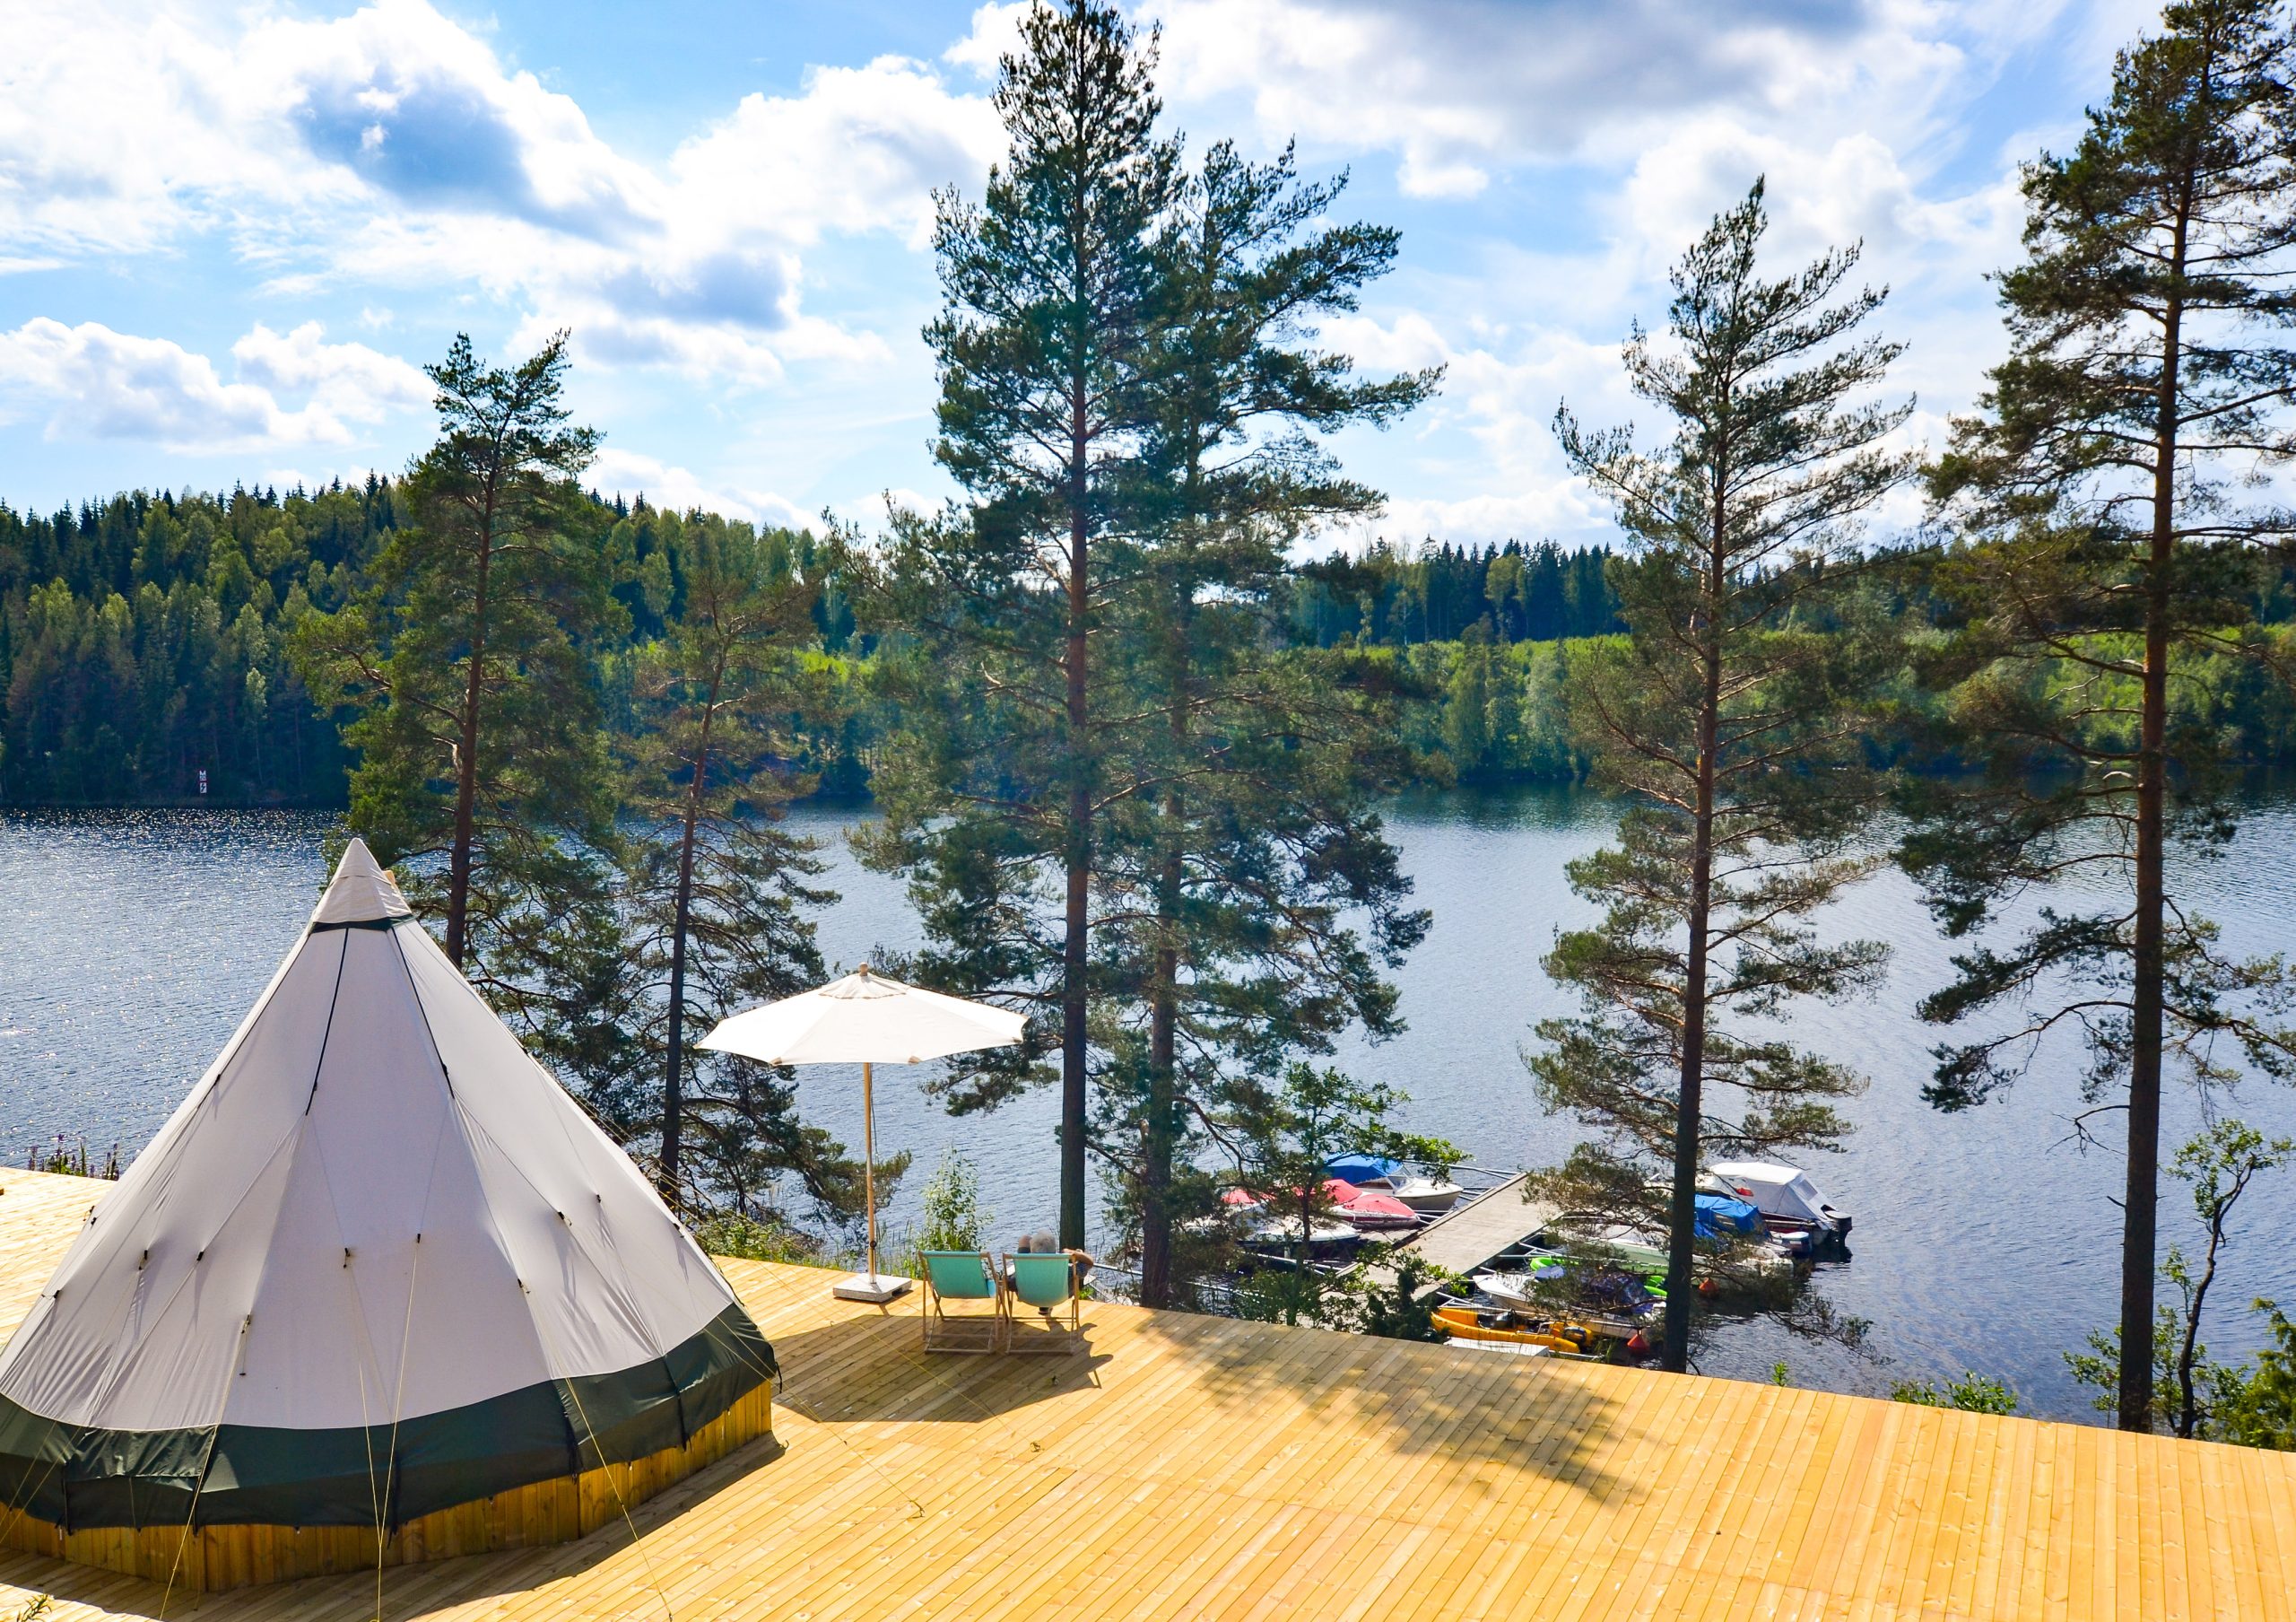 Camping i Sverige: Finn ditt campingparadis! - Opplev Sverige